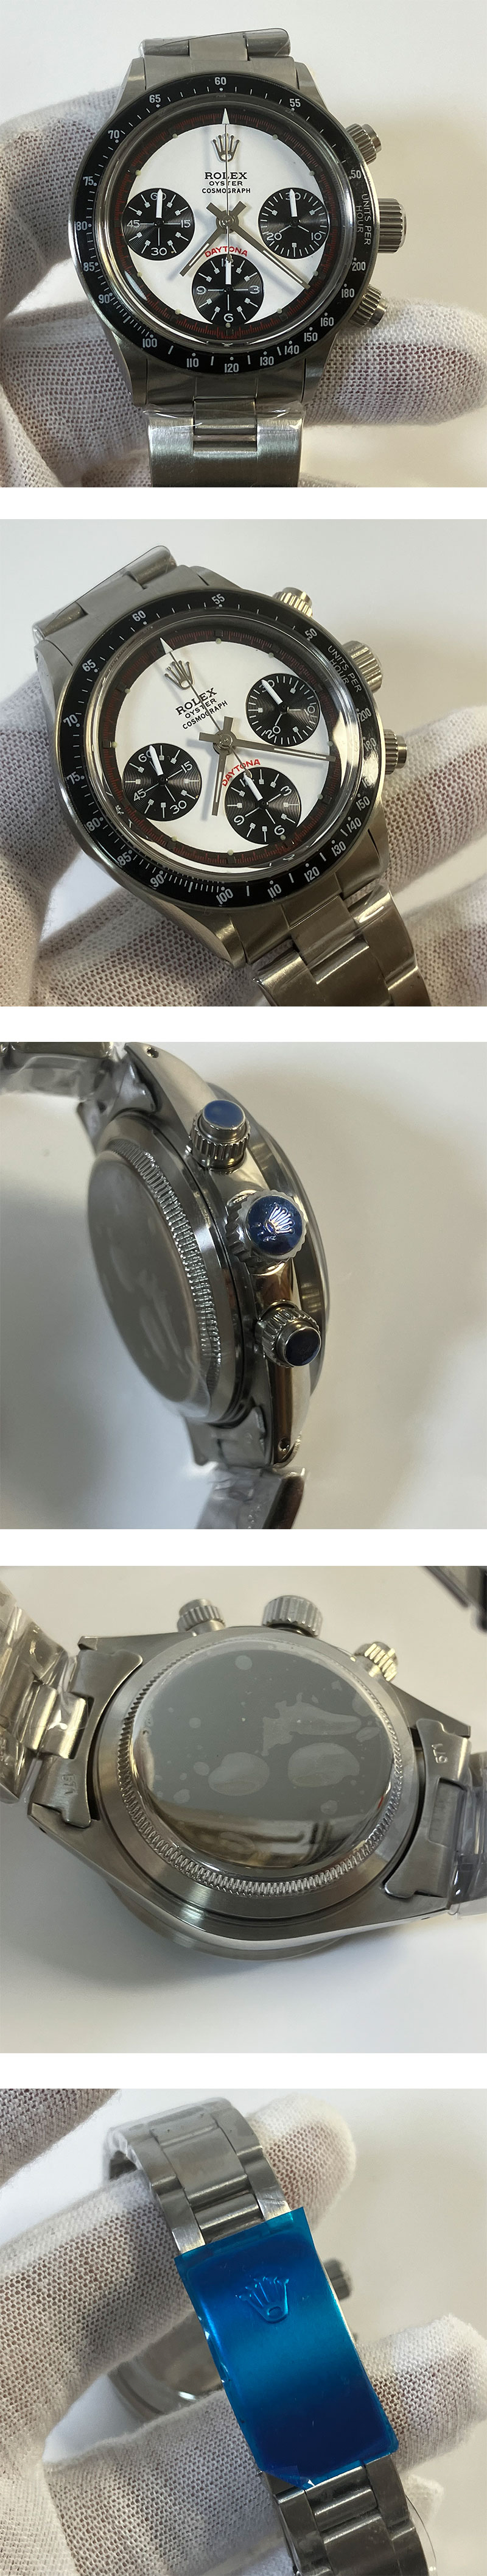 【洗練された存在感】メンズ腕時計 ロレックスデイトナコピー時計6263 / 自動巻き(パンダ文字盤)